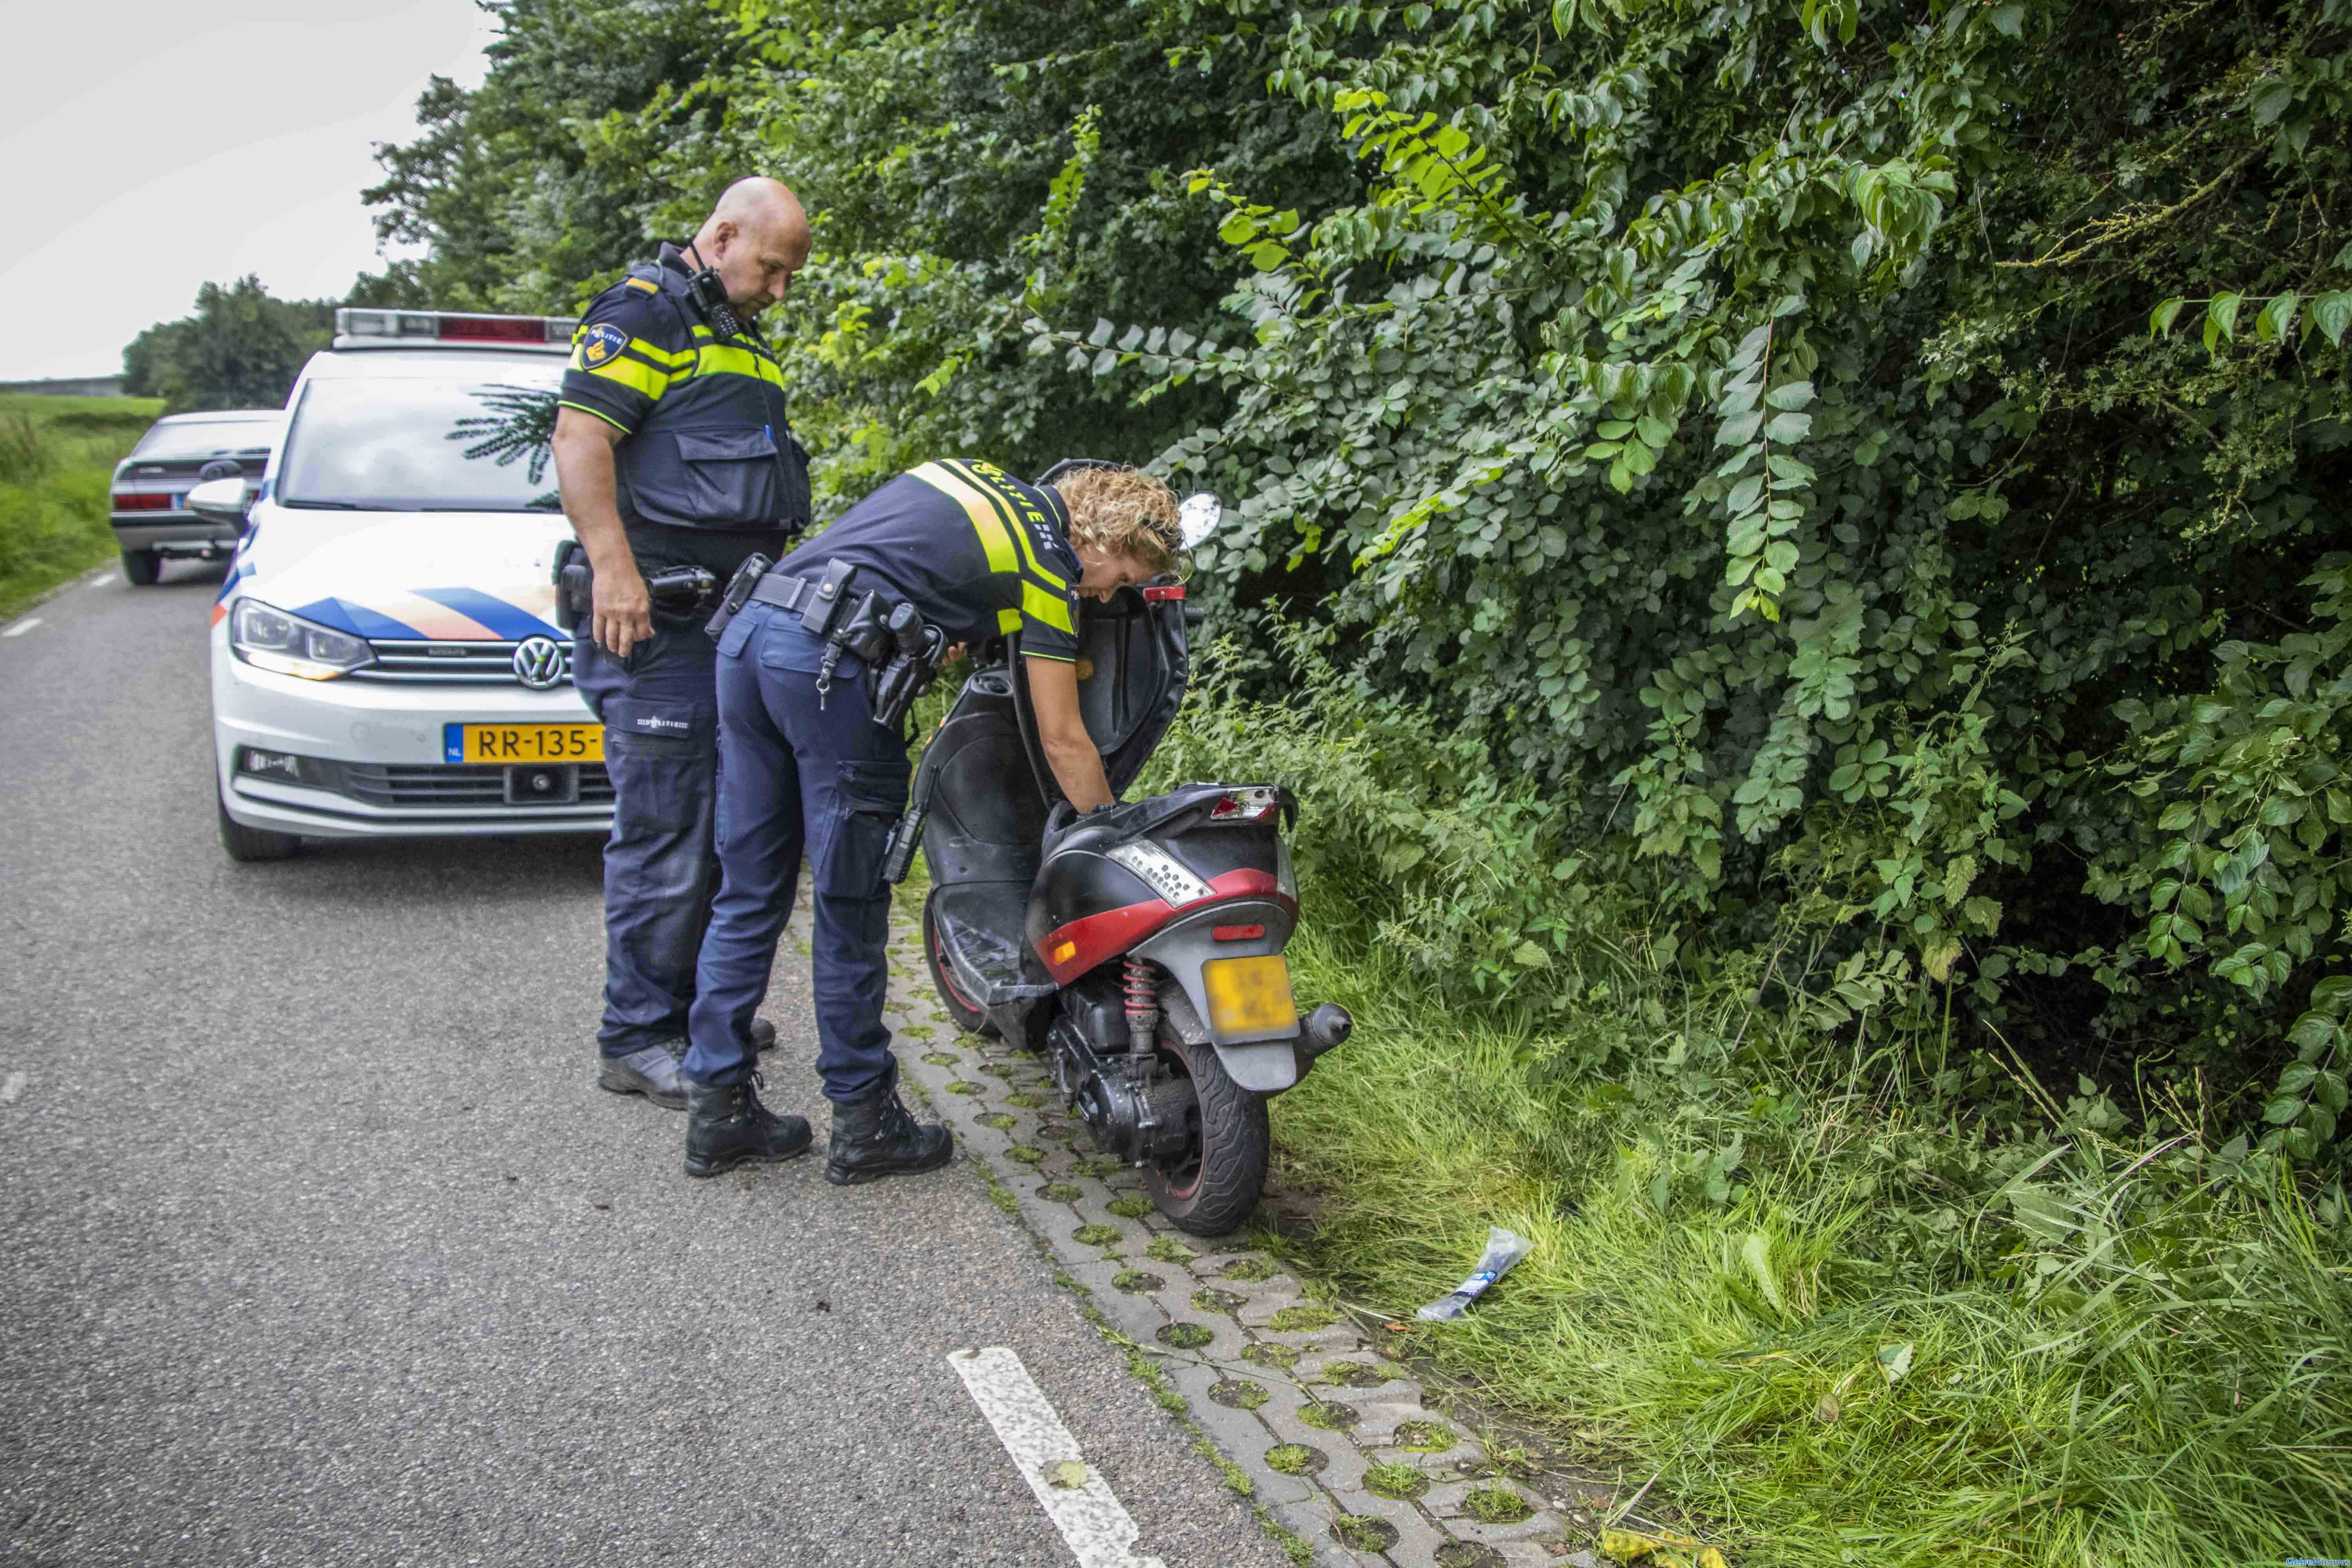 Gestolen scooter teruggevonden in bosjes na melding van ongeval